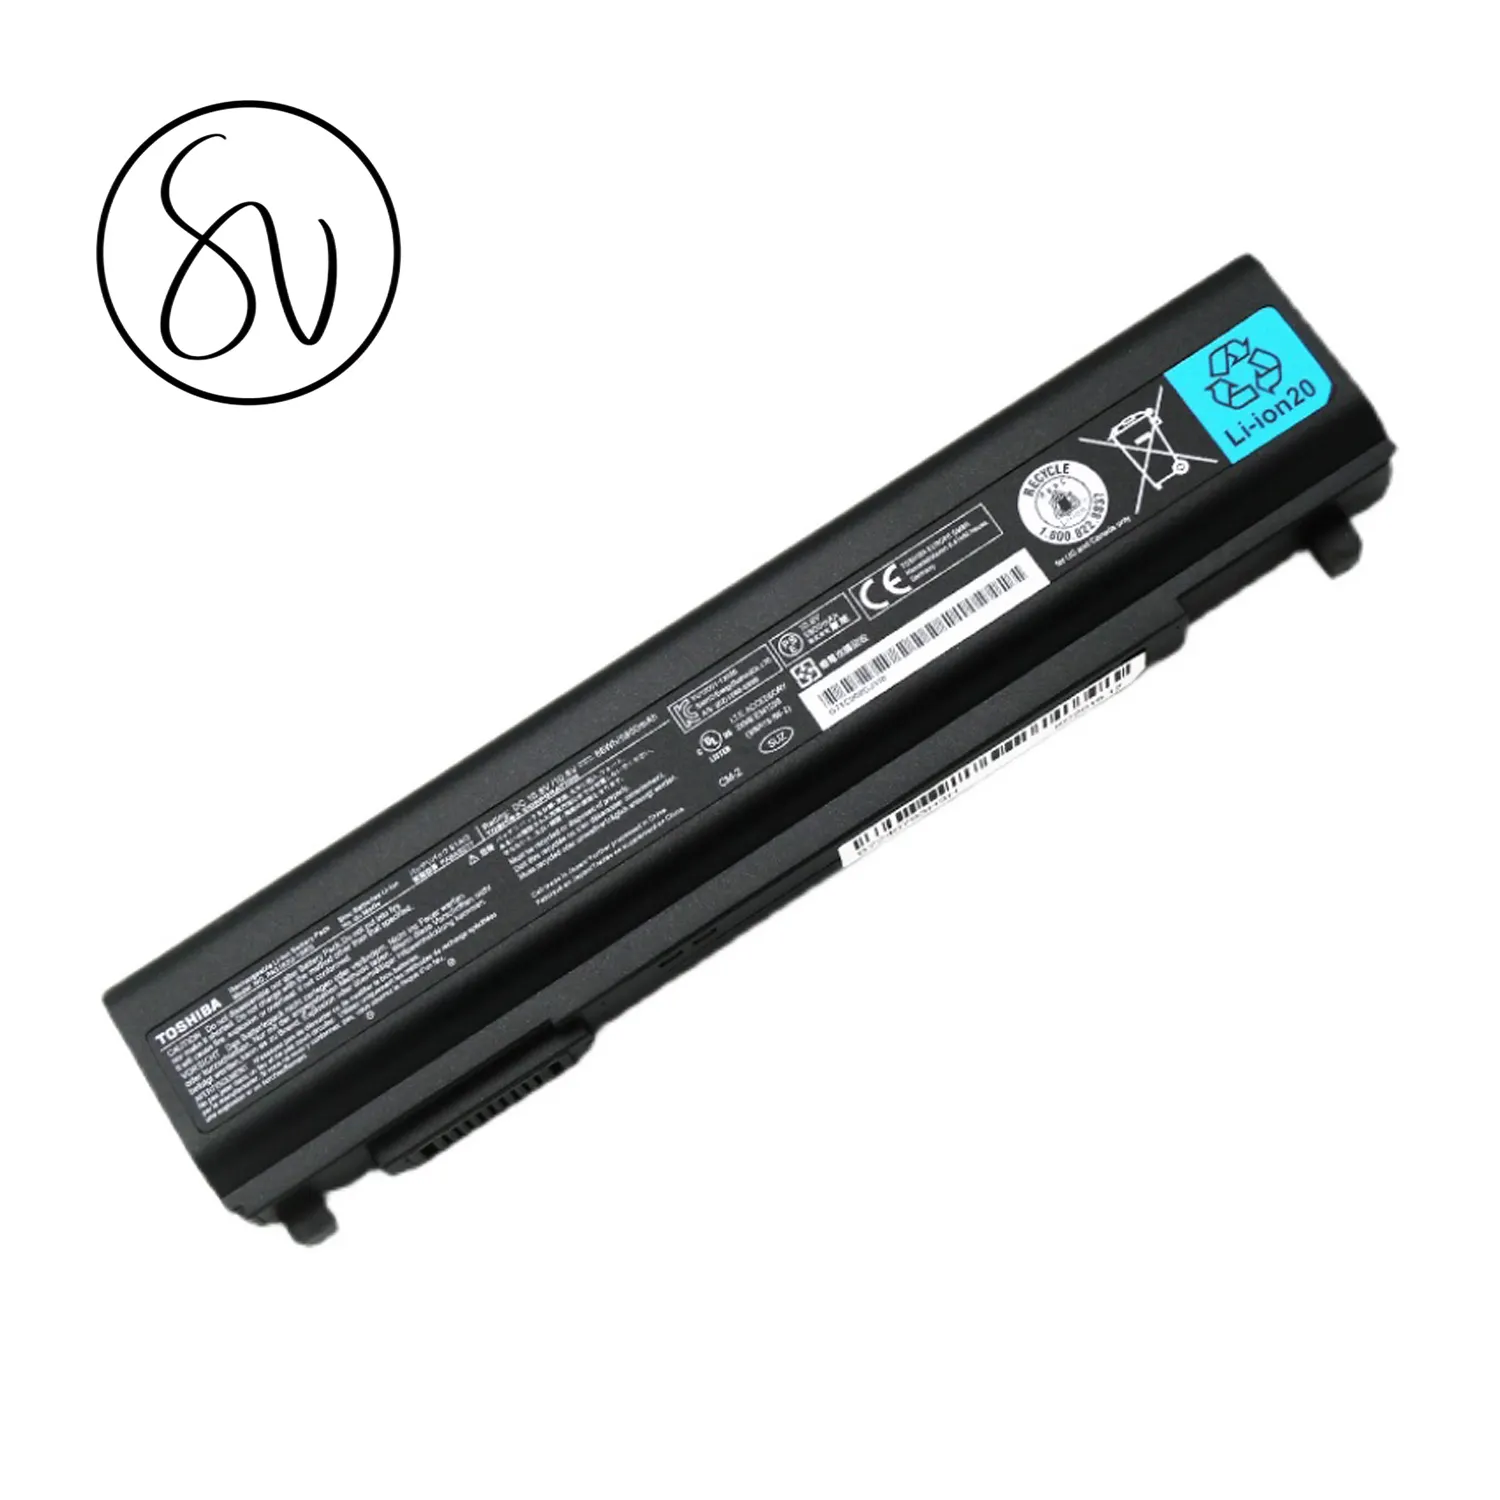 Bateria de laptop PA5162U-1BRS pabas277 para toshiba portege r30, r30a, bateria de substituição recarregável